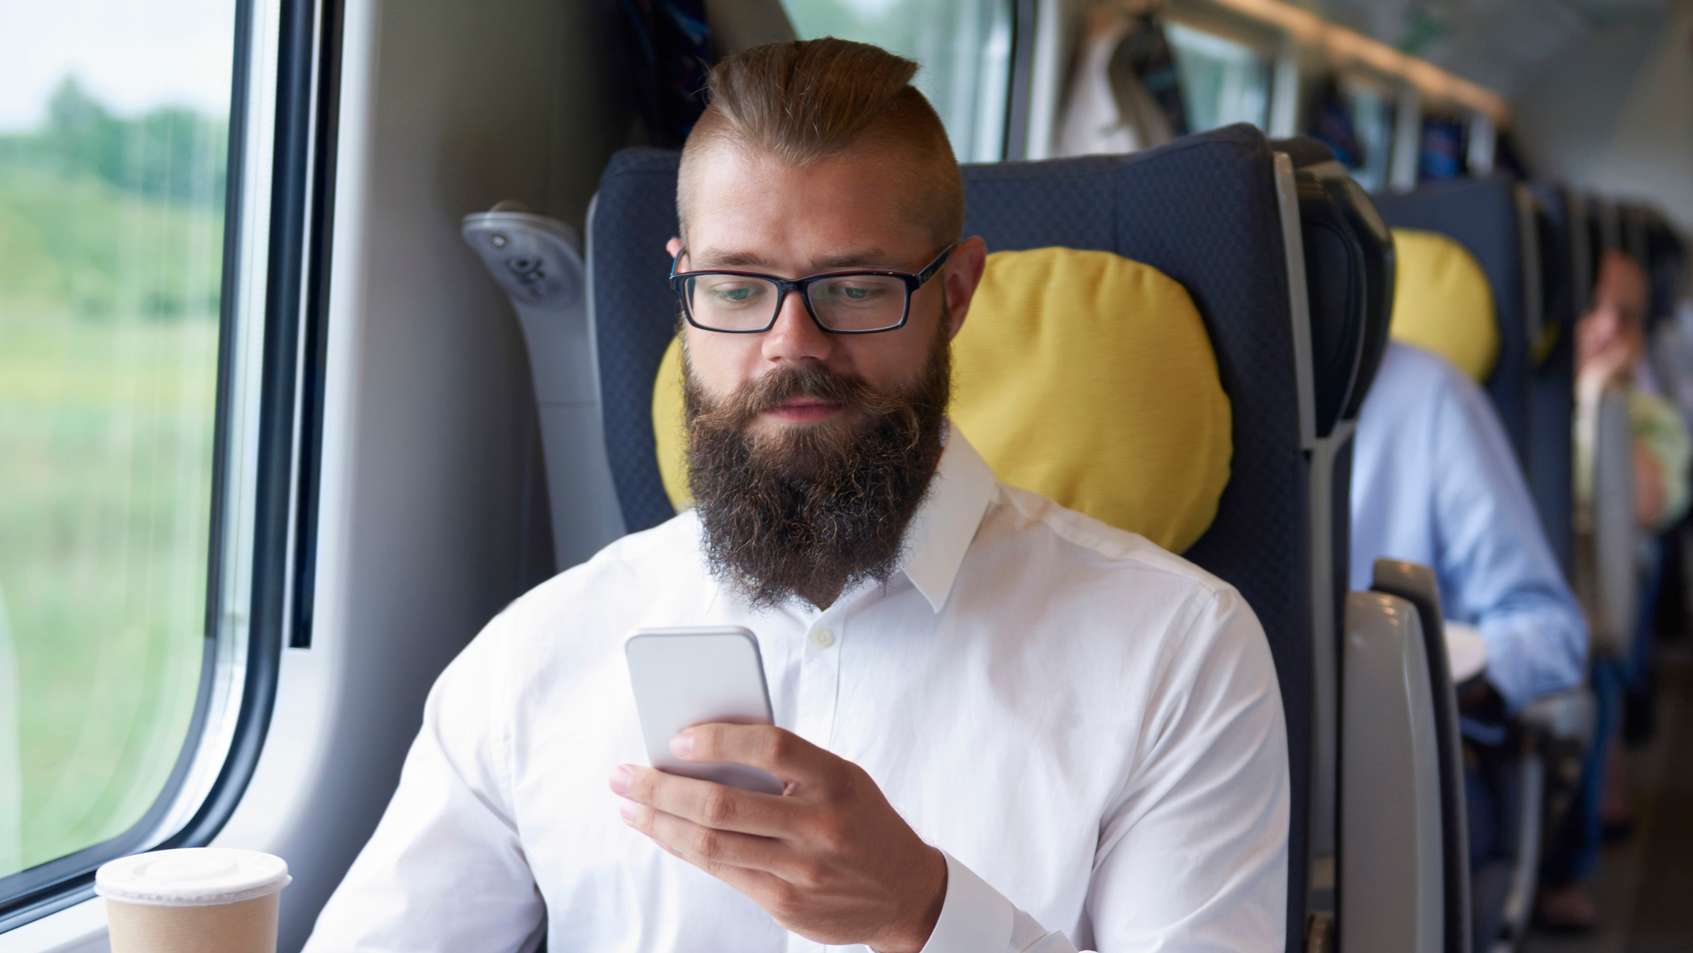 Mann mit Handy in der Hand sitzt in einem Zugabteil am Fenster